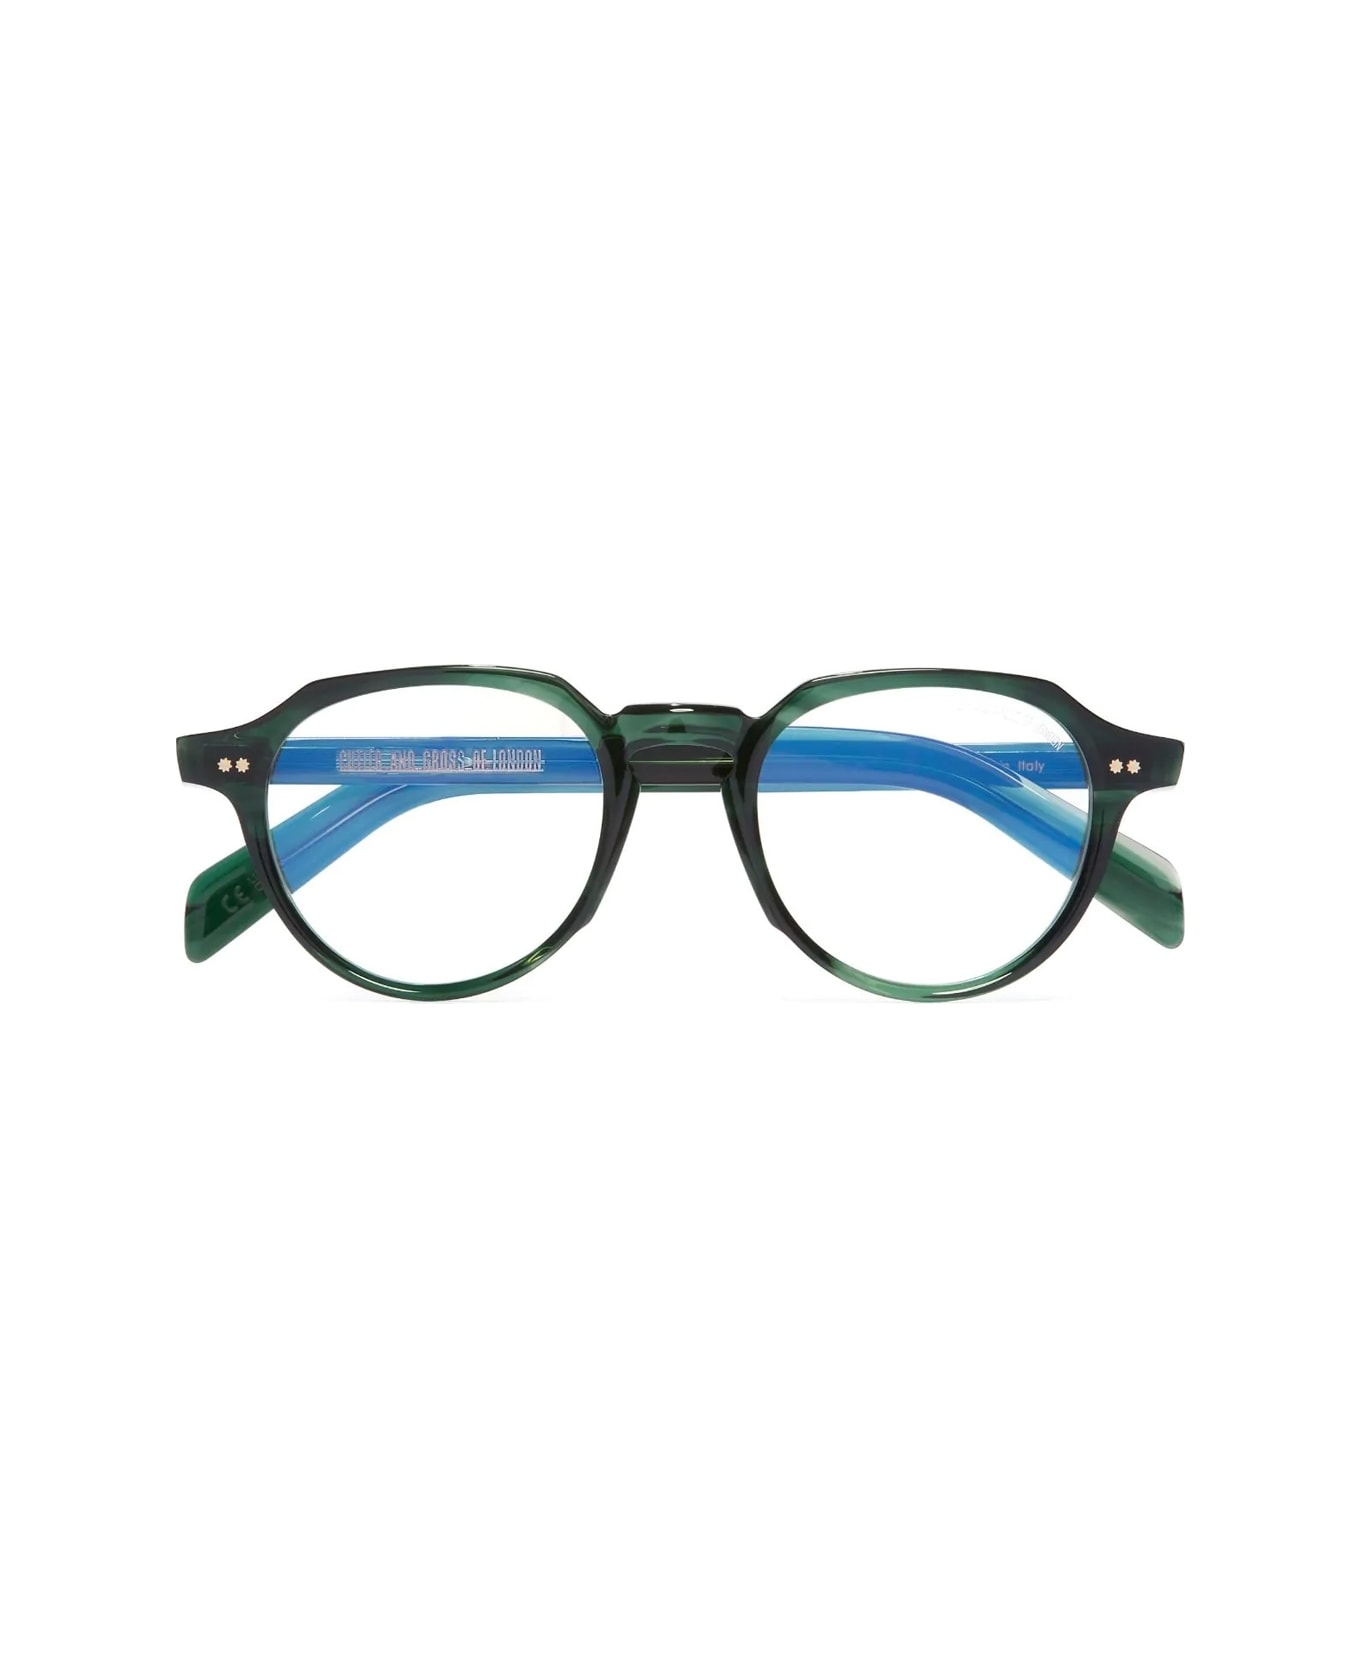 Cutler and Gross Gr06 03 Striped Dark Havana Glasses - Verde